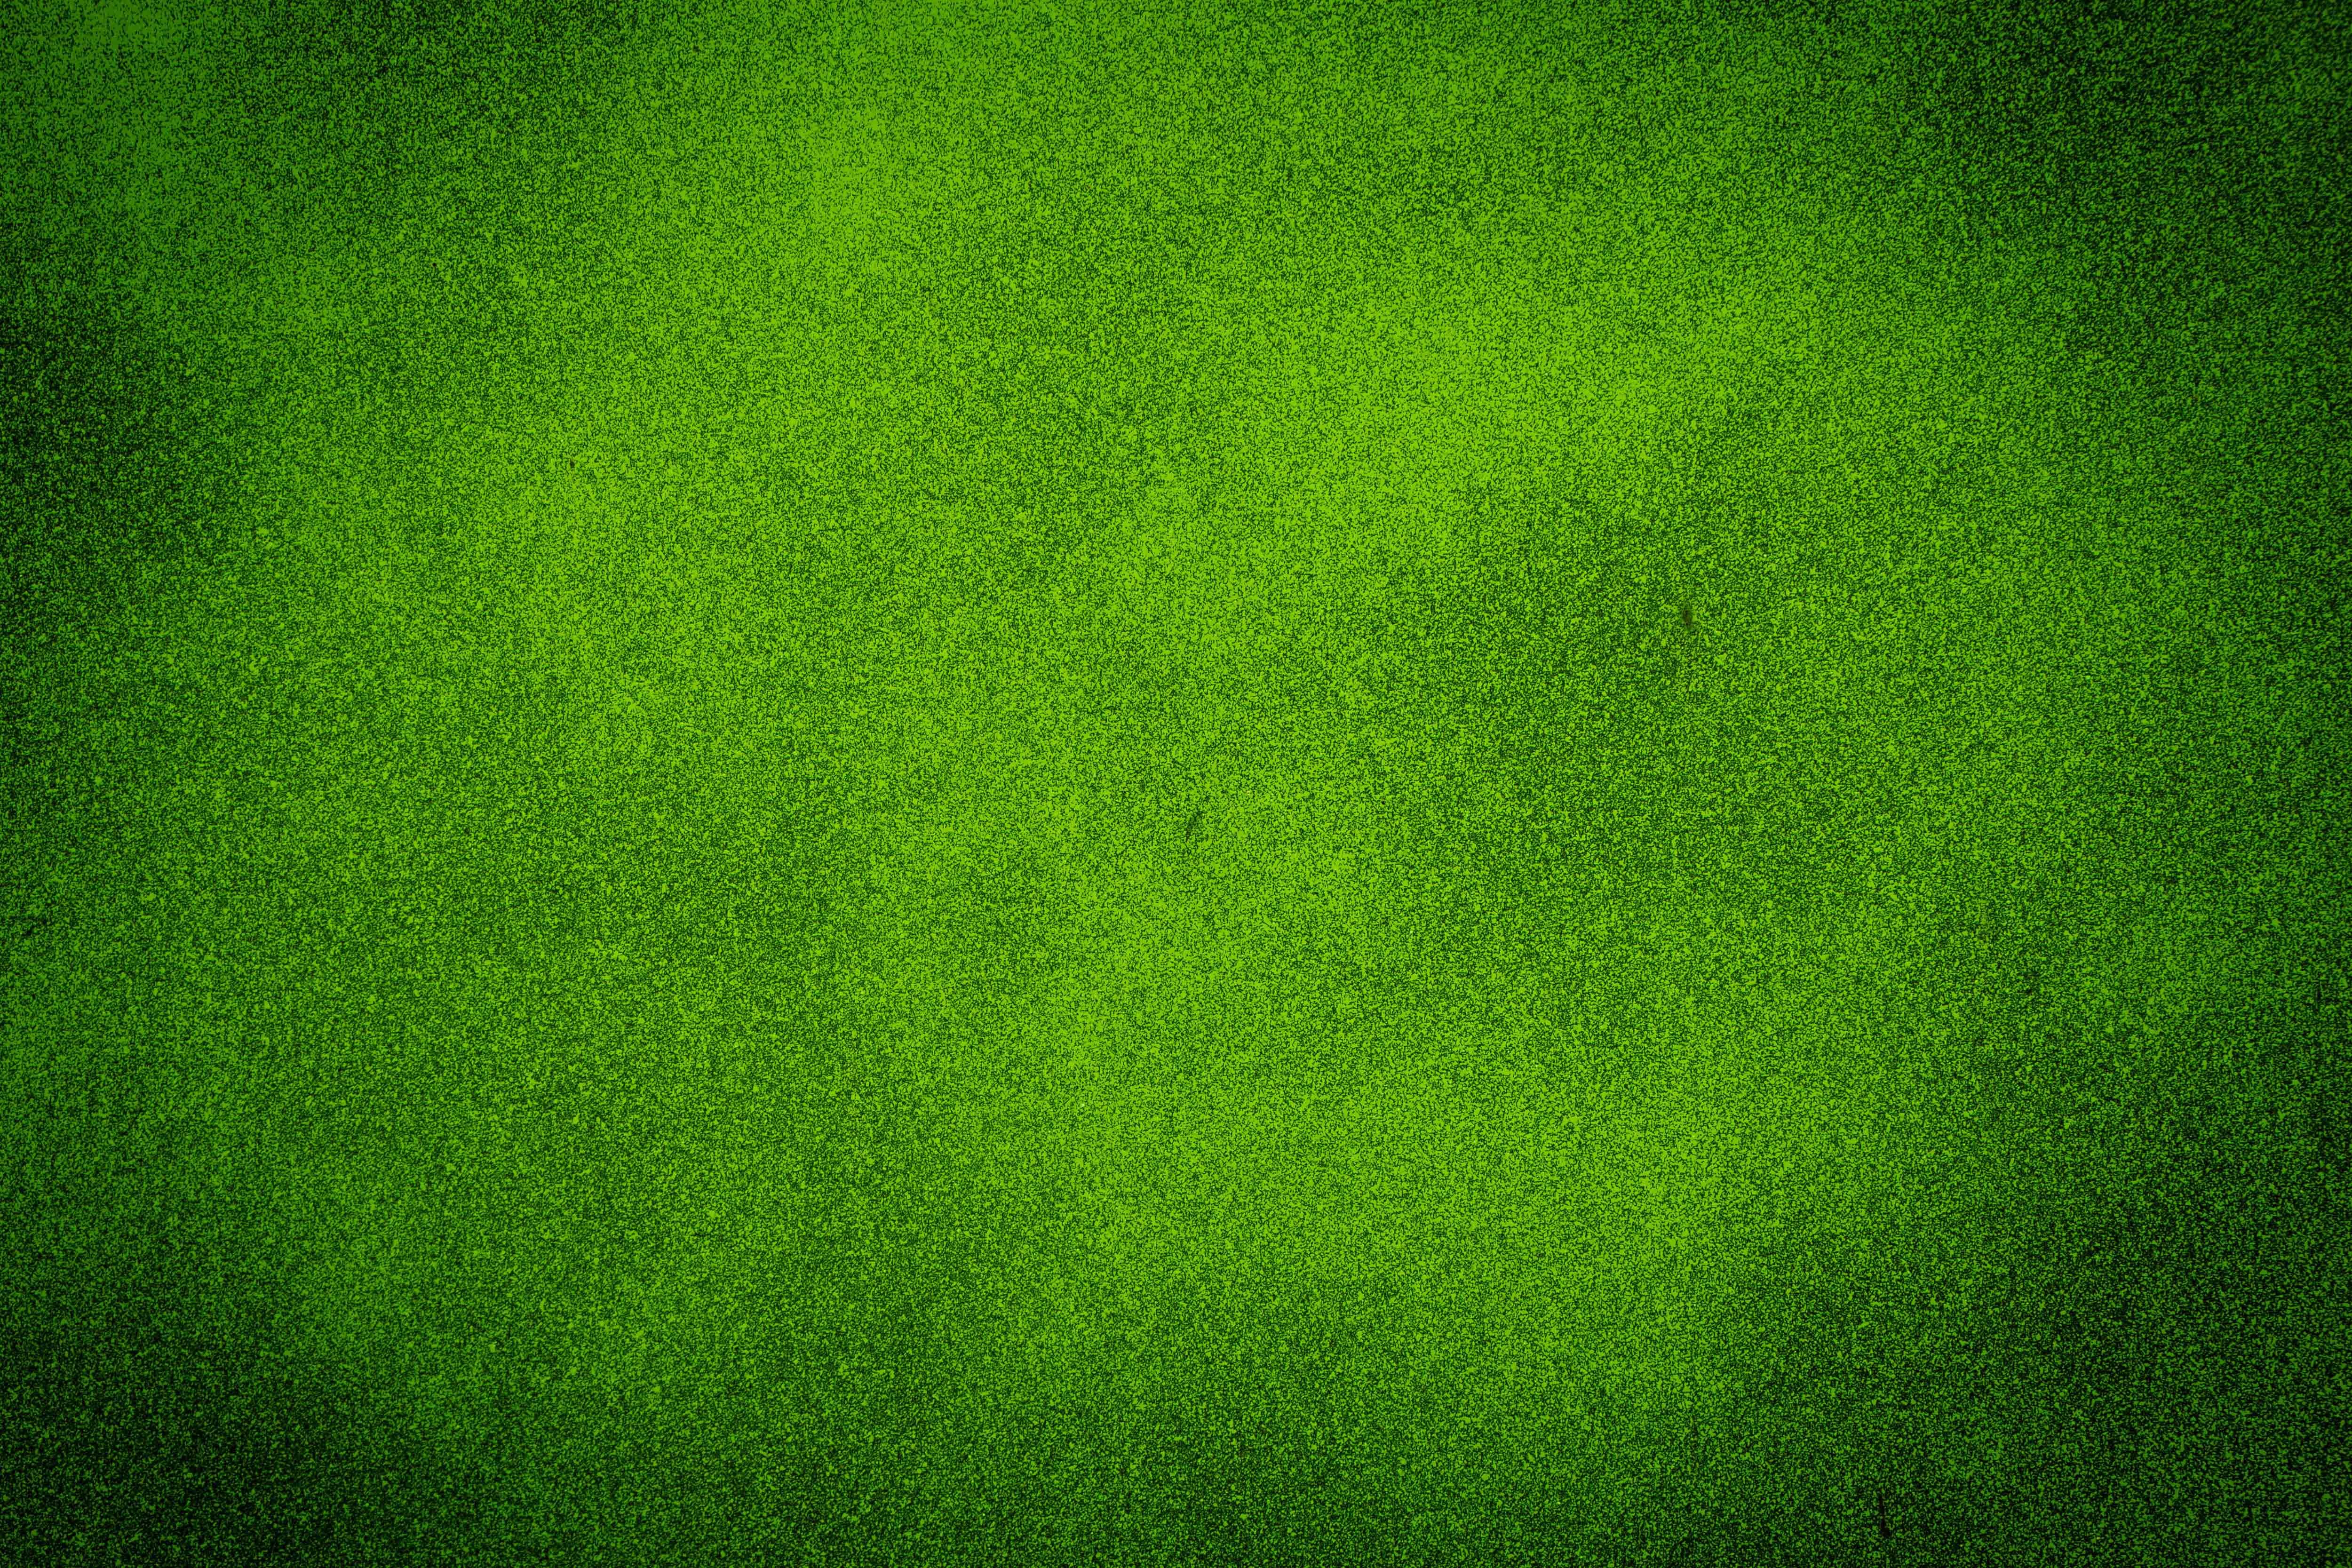 自然绿草超清壁纸,自然风光图片背景,没几个看过的?